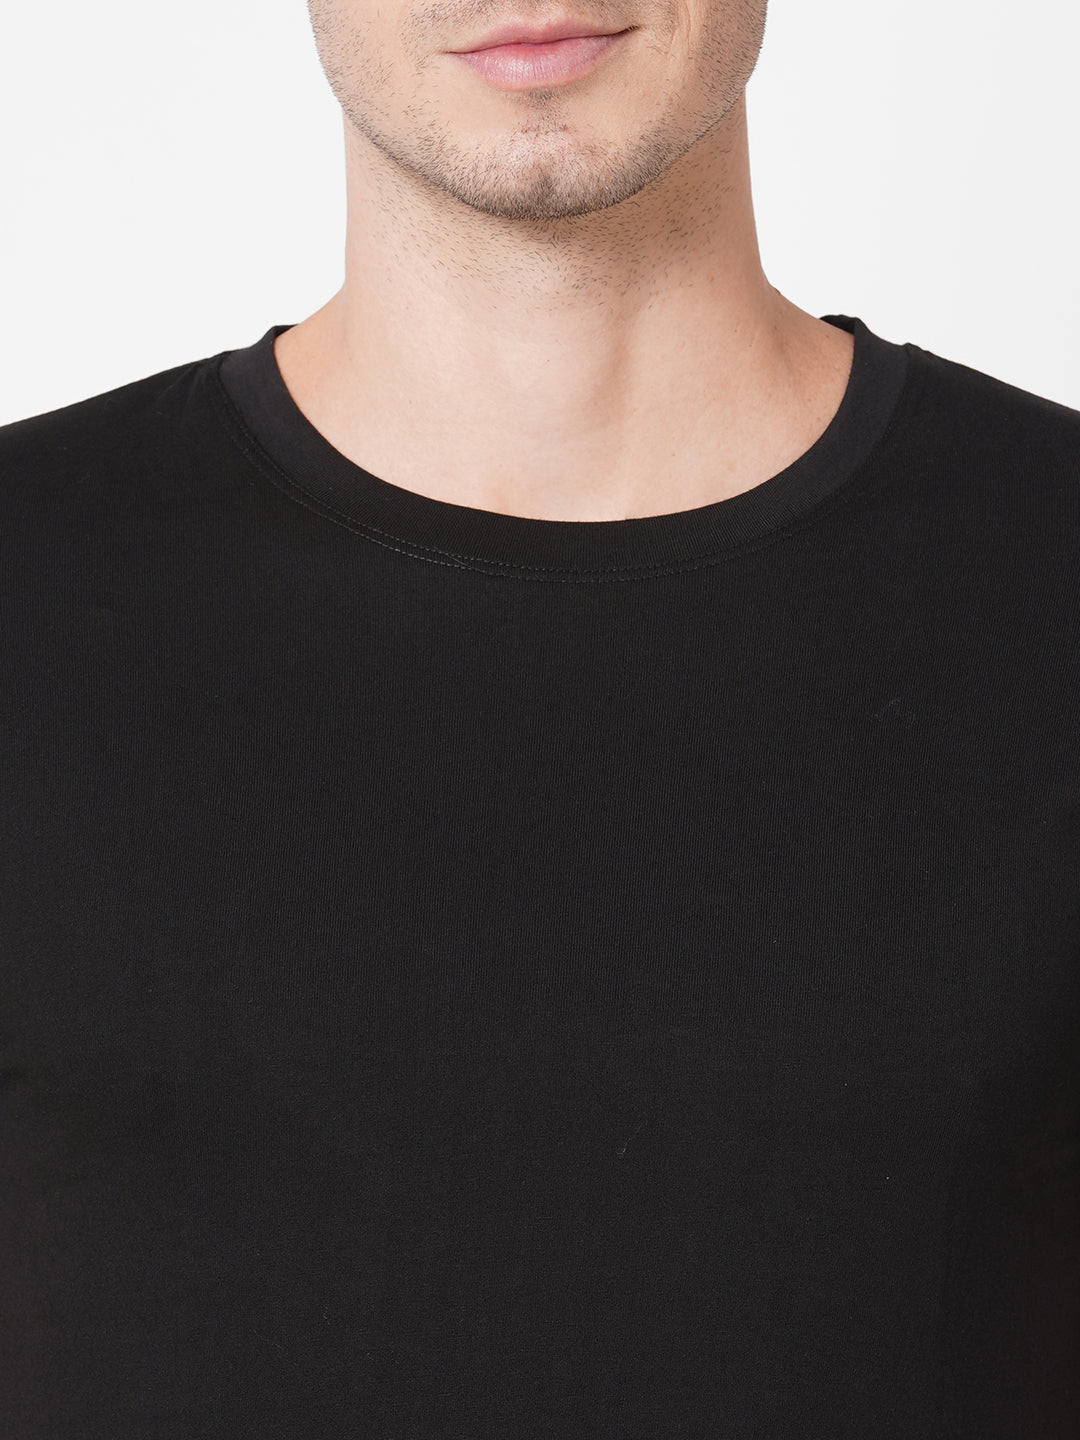 Black Plain T-Shirts